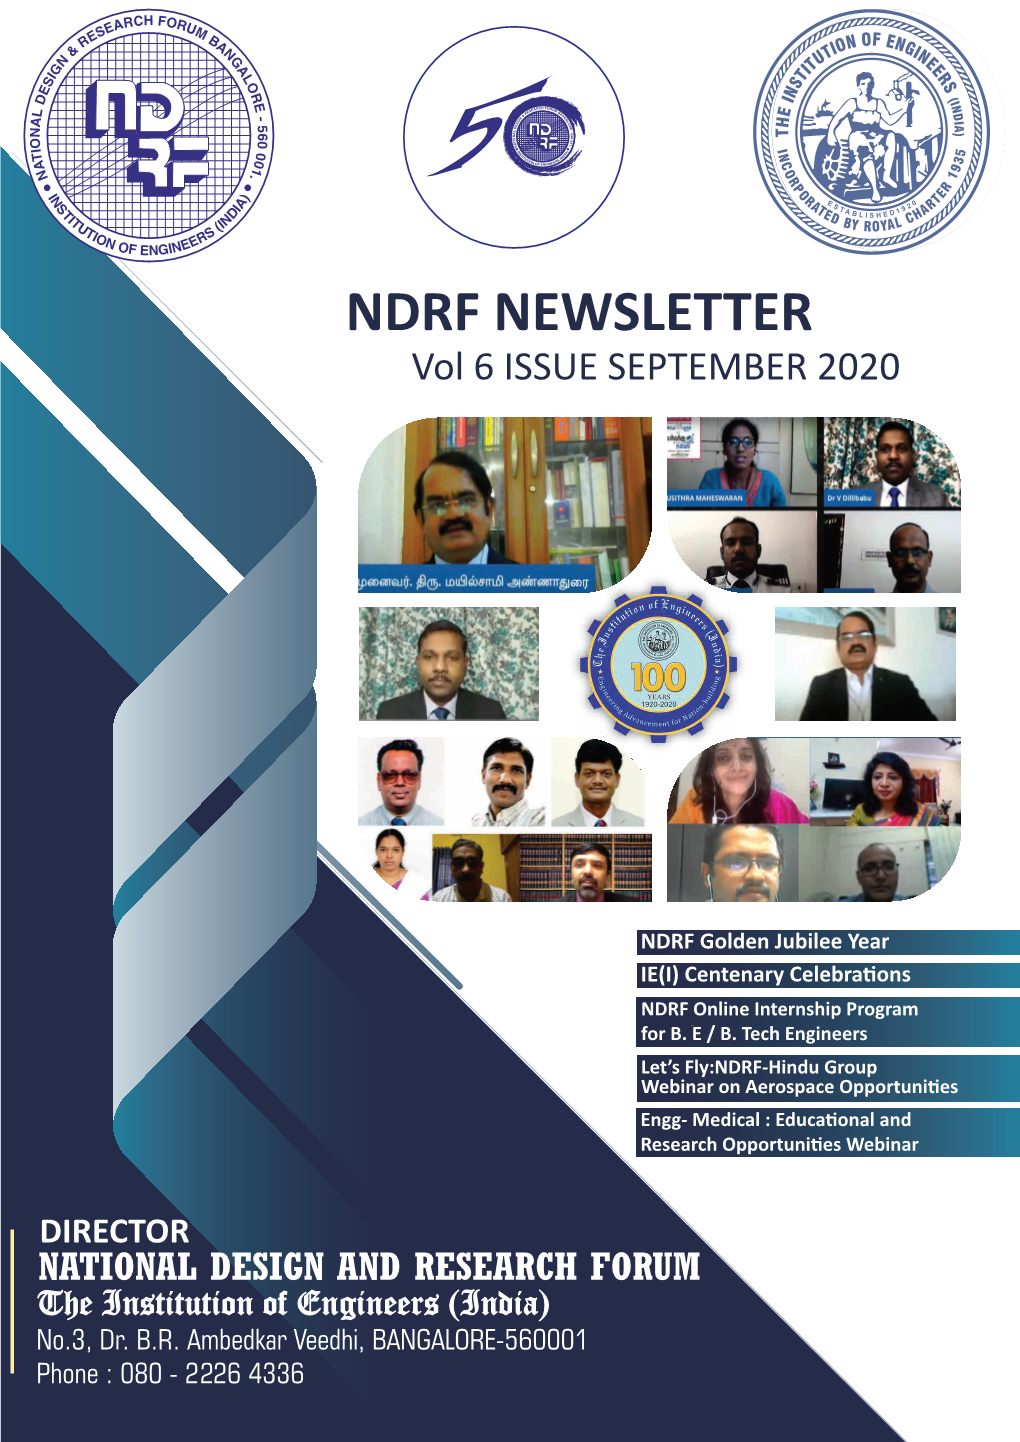 NDRF NEWSLETTER Vol 6 ISSUE SEPTEMBER 2020